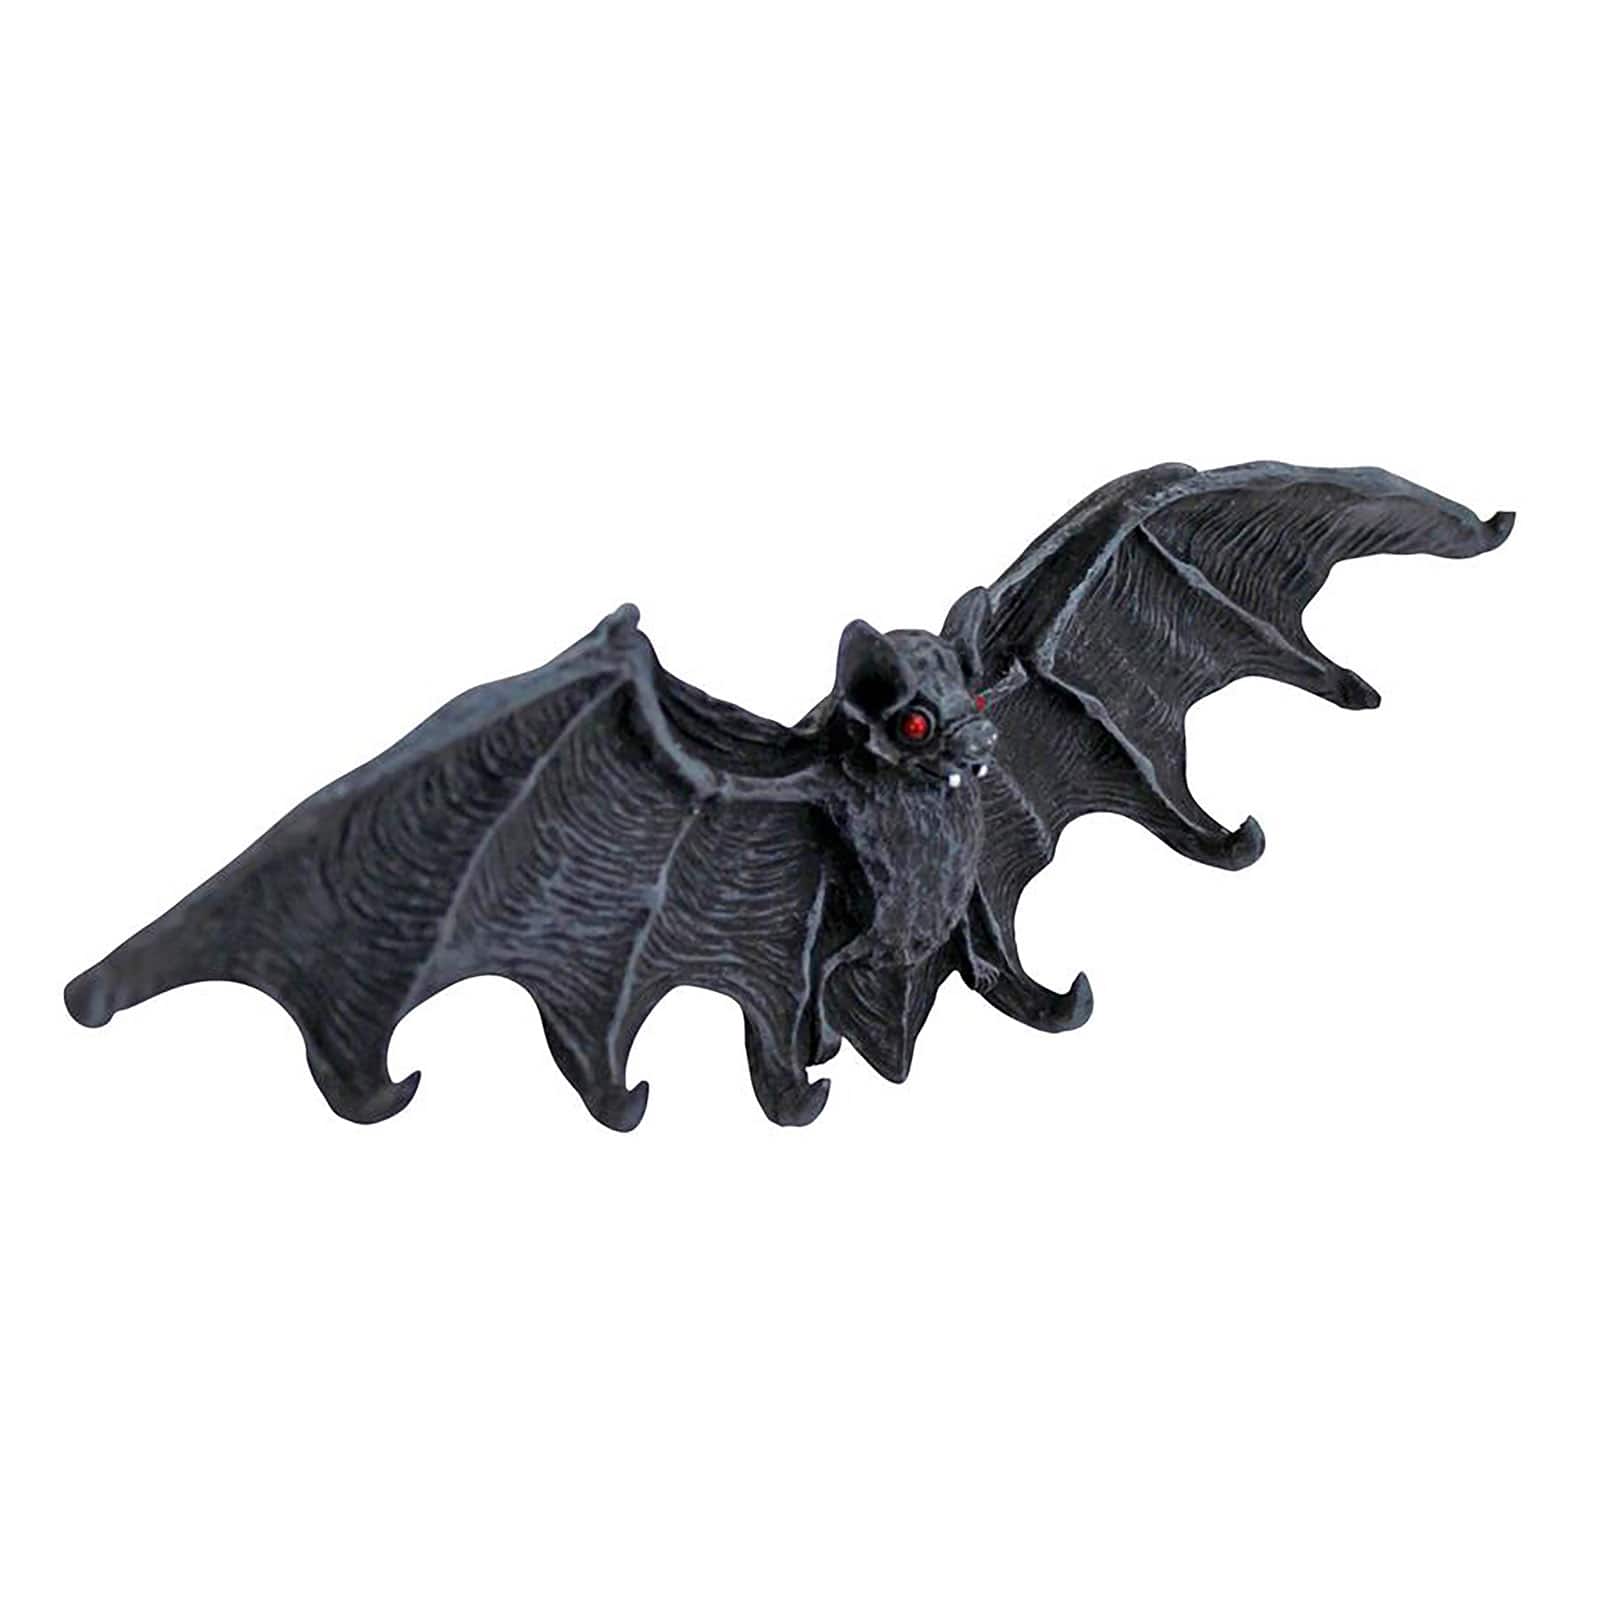 Design Toscano Medium Vampire Bat Key Holder Wall Sculpture Set